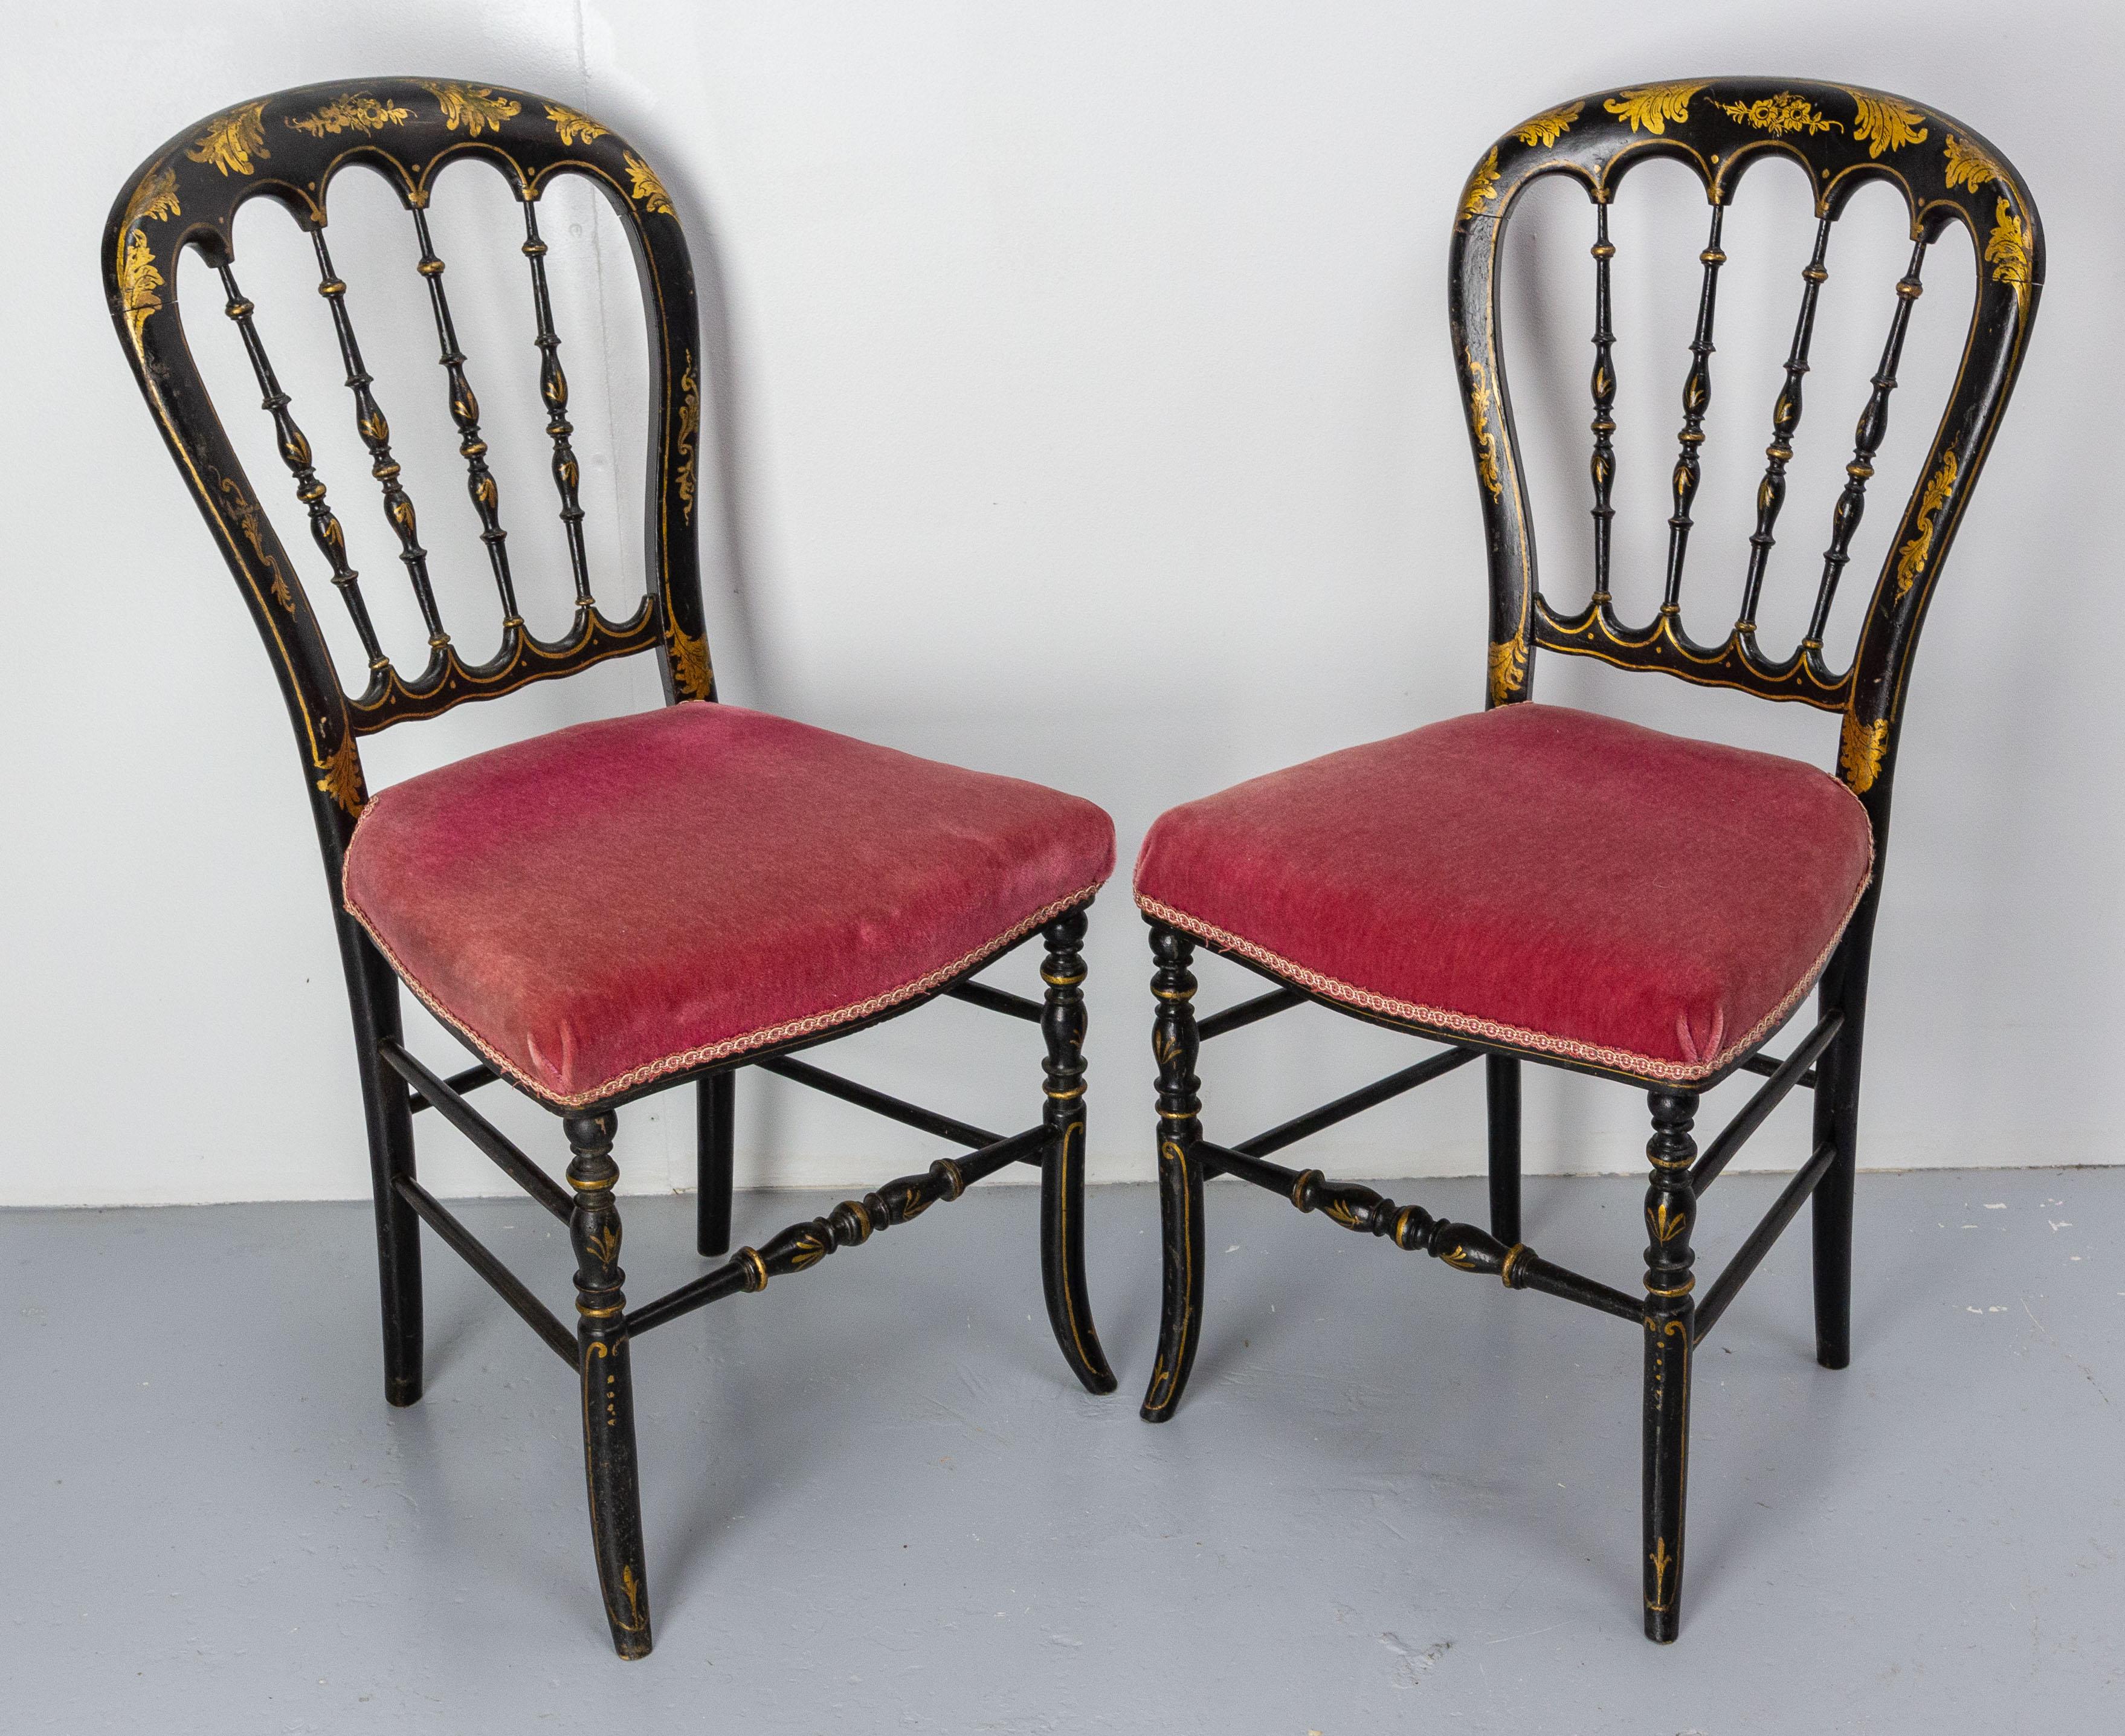 Paire française de Napoléon III, vers 1880.
Peinture noire avec motifs végétaux dorés
Antique, fin du 19e siècle.
Il peut être recouvert du tissu de votre choix pour s'adapter à votre intérieur, mais les chaises peuvent être utilisées dans leur